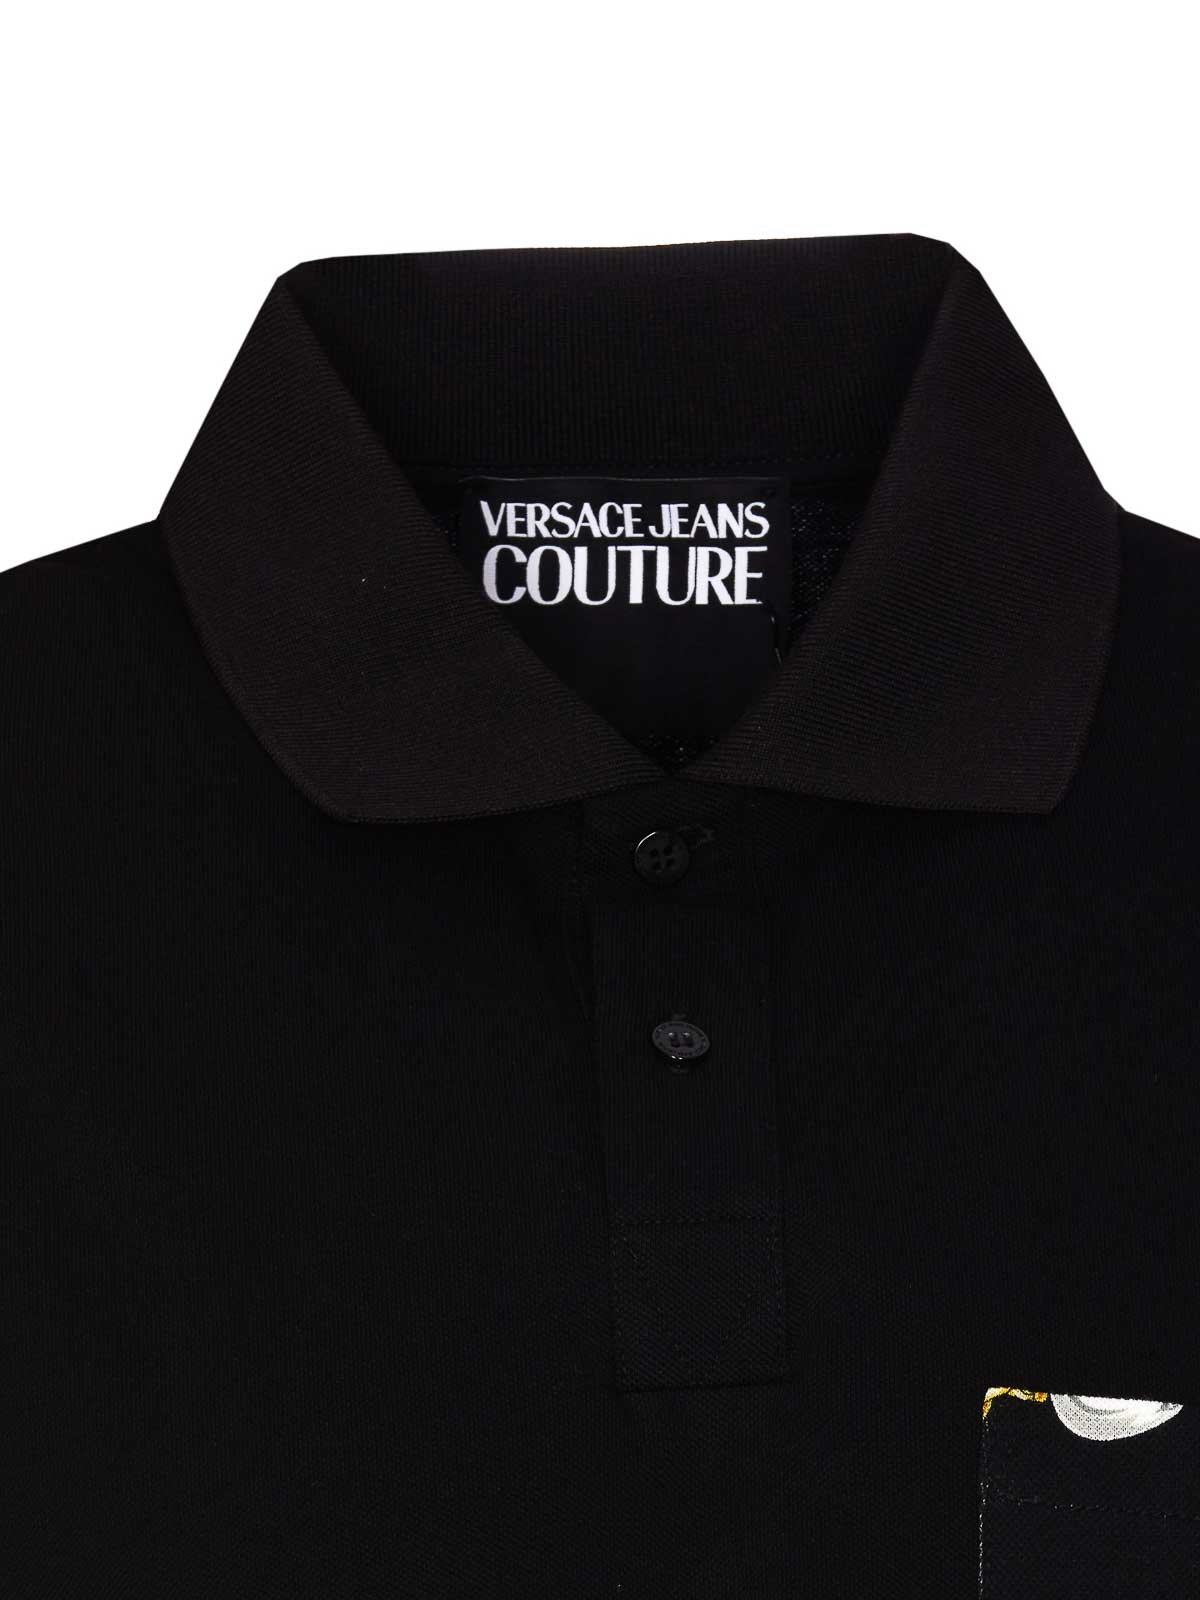 ポロシャツ Versace Jeans Couture - ポロシャツ - 黒 - 75GAG627JS237G89